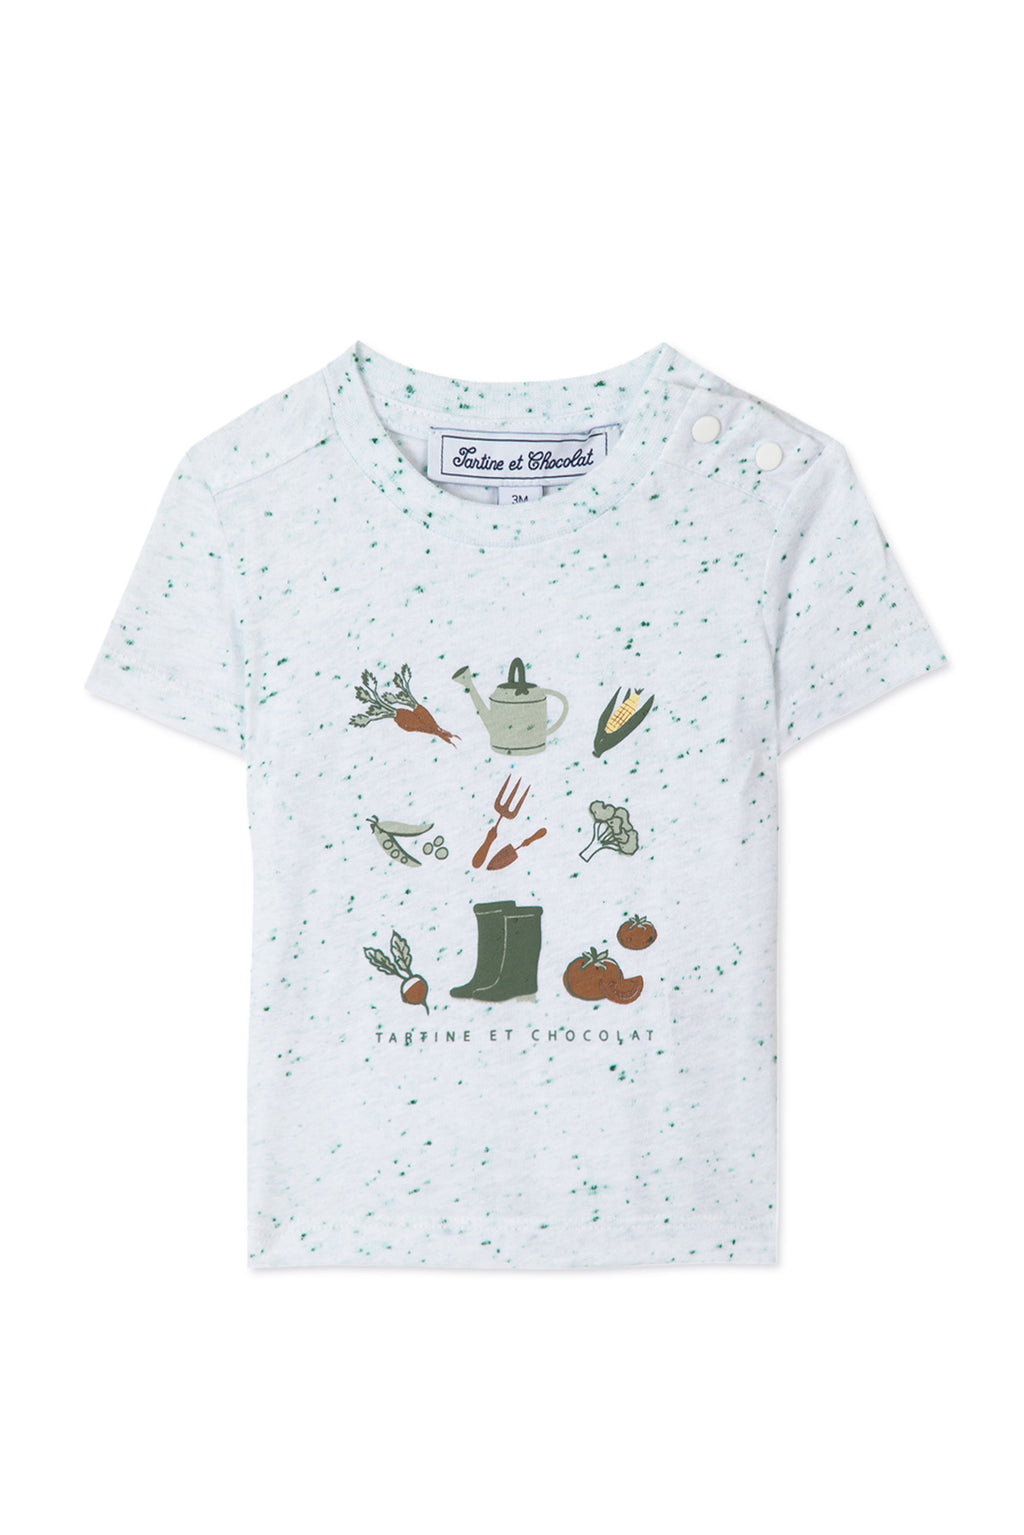 T-shirt - White Gardener illustrations